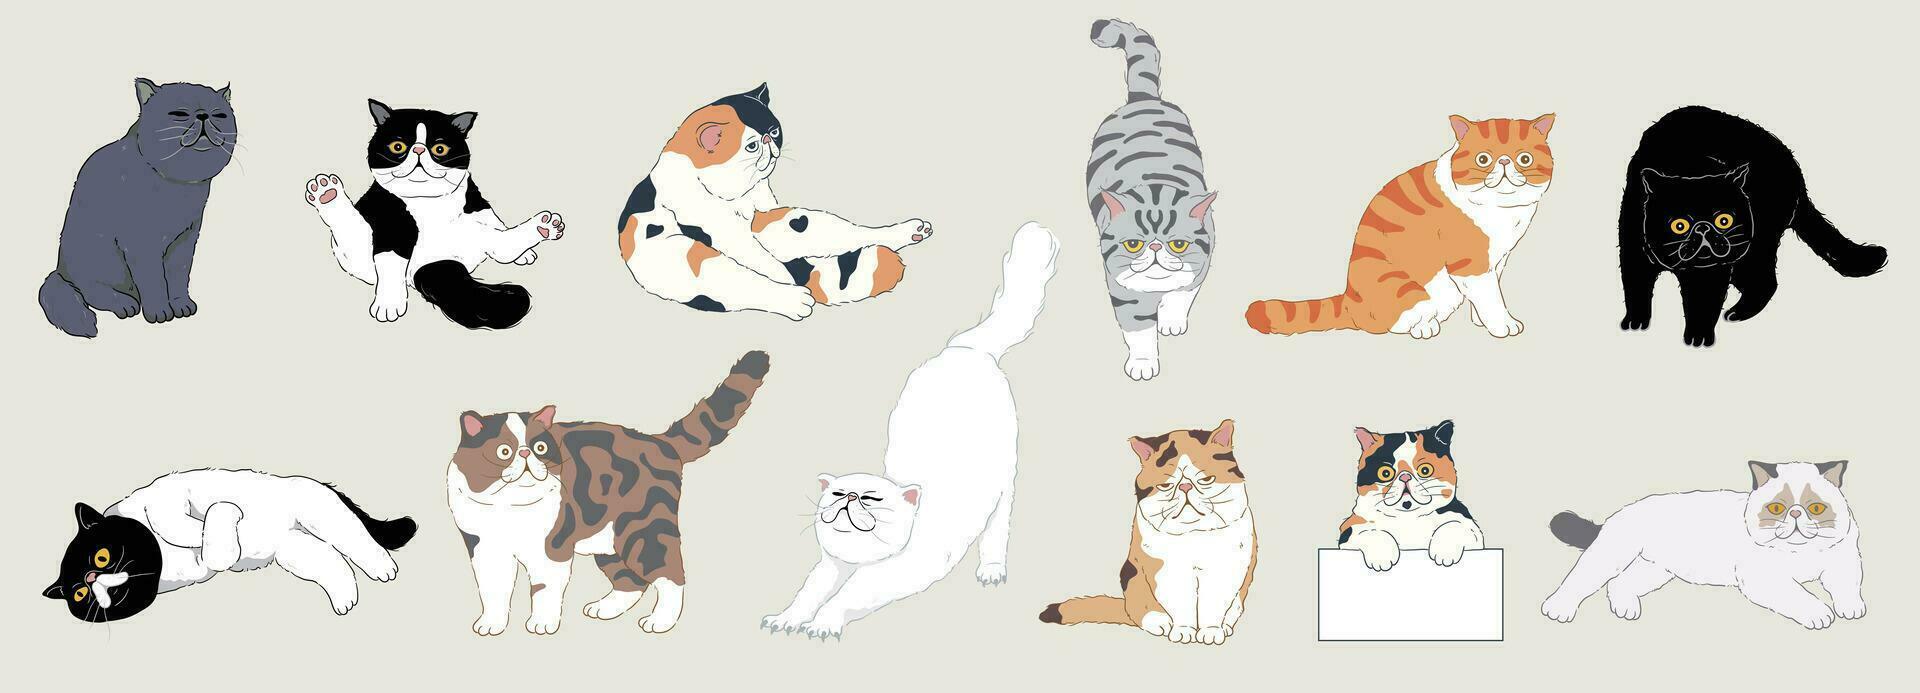 conjunto de linda dibujos animados exótico cabello corto gatos con diferente de colores piel y tipo de abrigo, razas aislado. vector ilustración